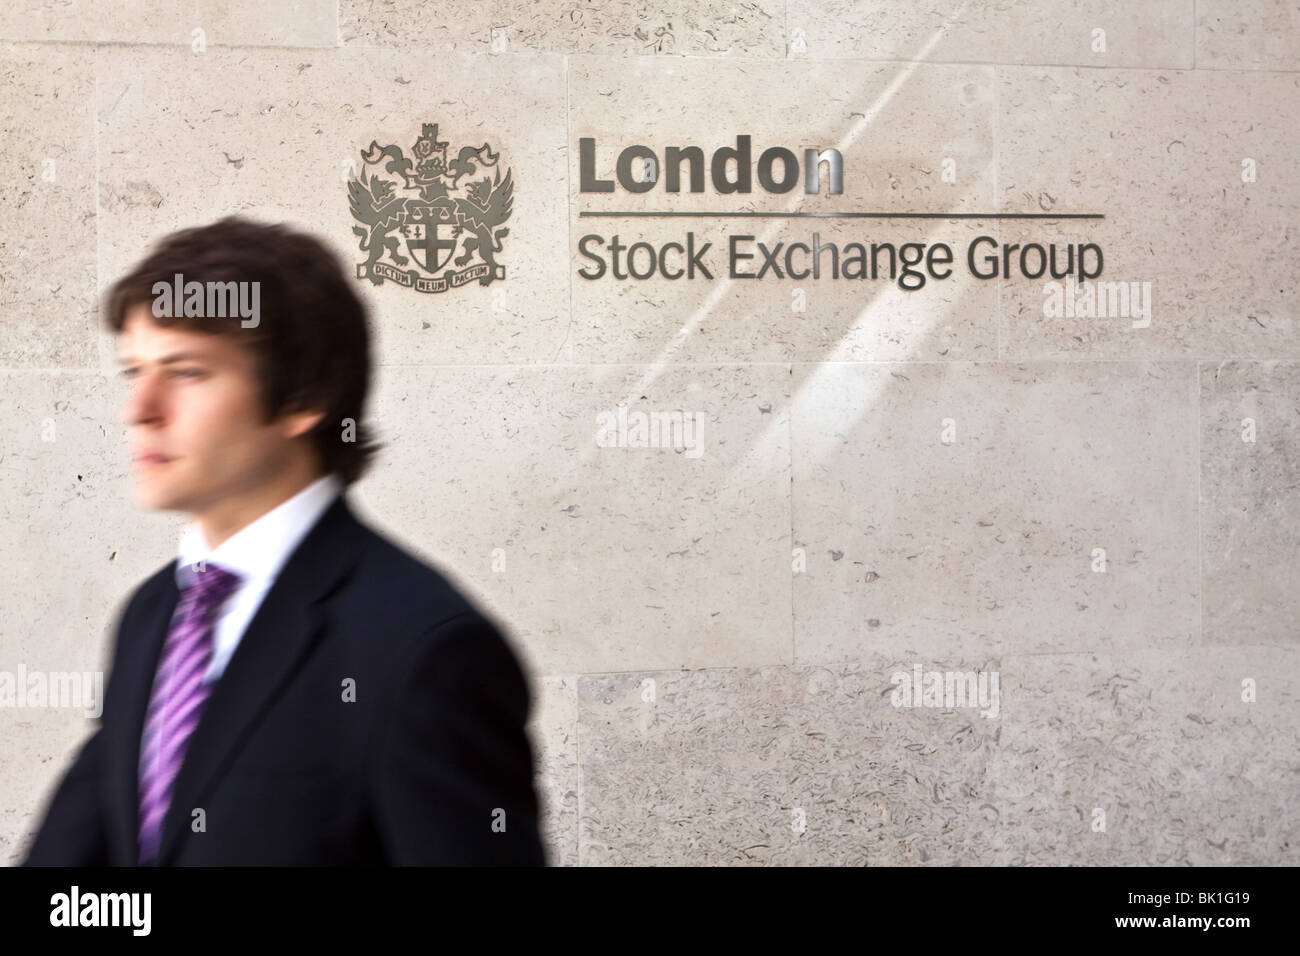 L'homme d'affaires à l'extérieur de la nouvelle Bourse de Londres Paternoster Square Banque D'Images